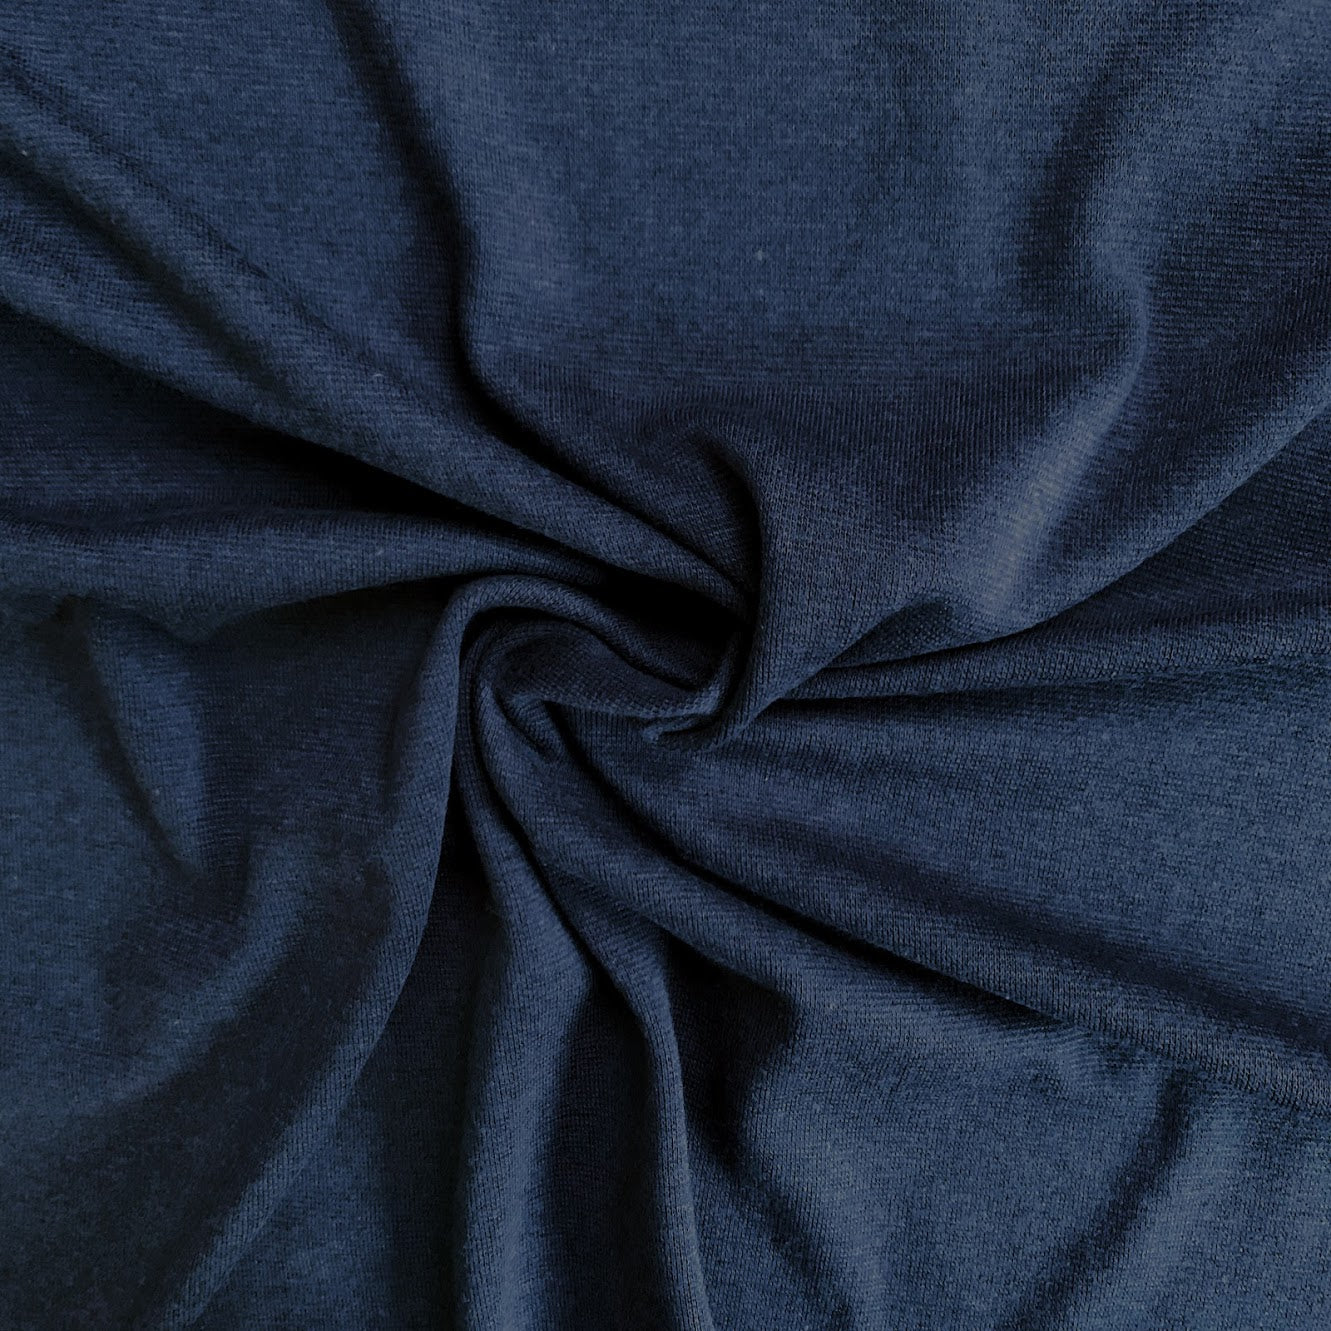 Dusty Blue Cotton Lycra Knit